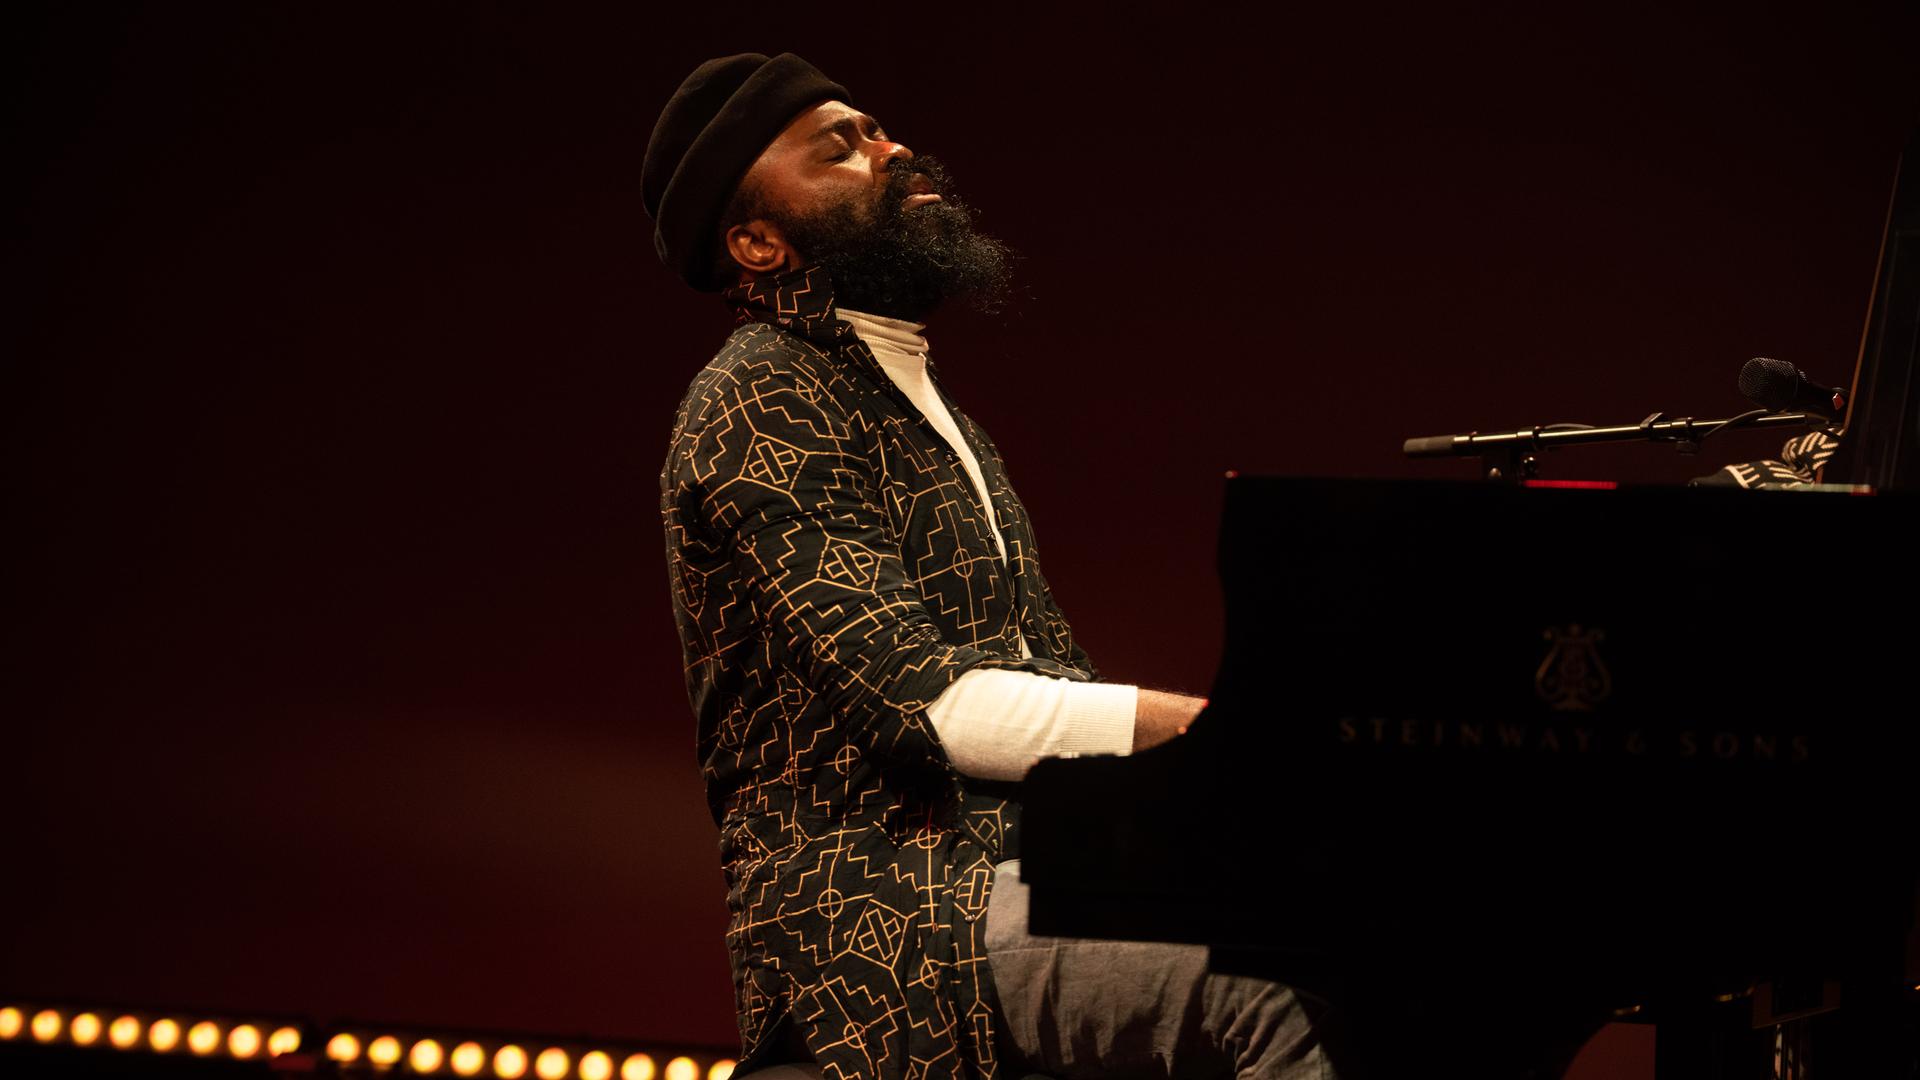 Ein bärtiger Mann mit schwarzer Wollmütze spielt zurückgelehnt mit geschlossenen Augen auf einer Bühne Klavier.